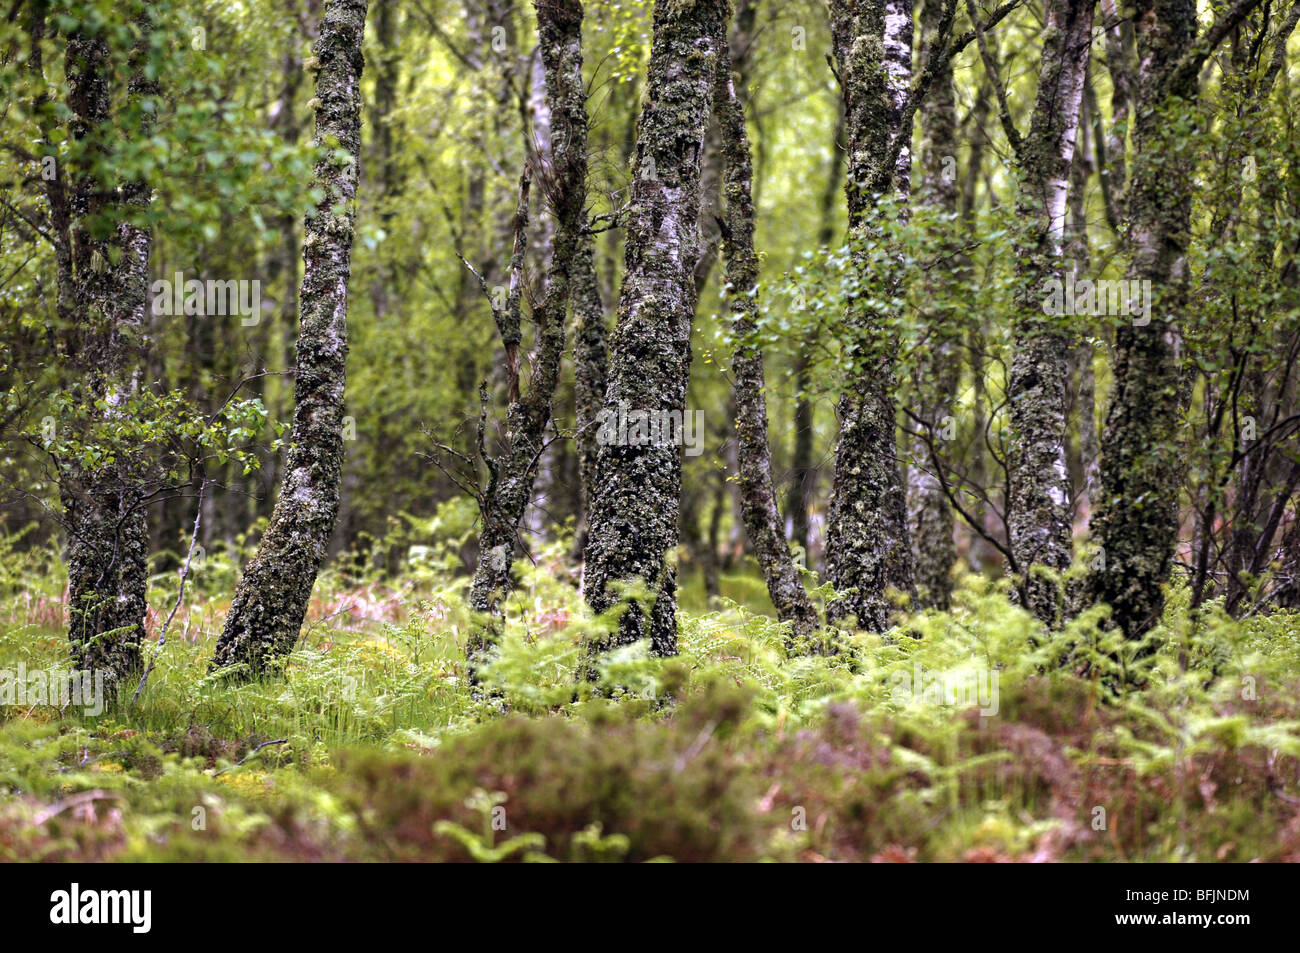 Un grupo de árboles cubiertos de musgo y corteza en los bosques. Foto de stock